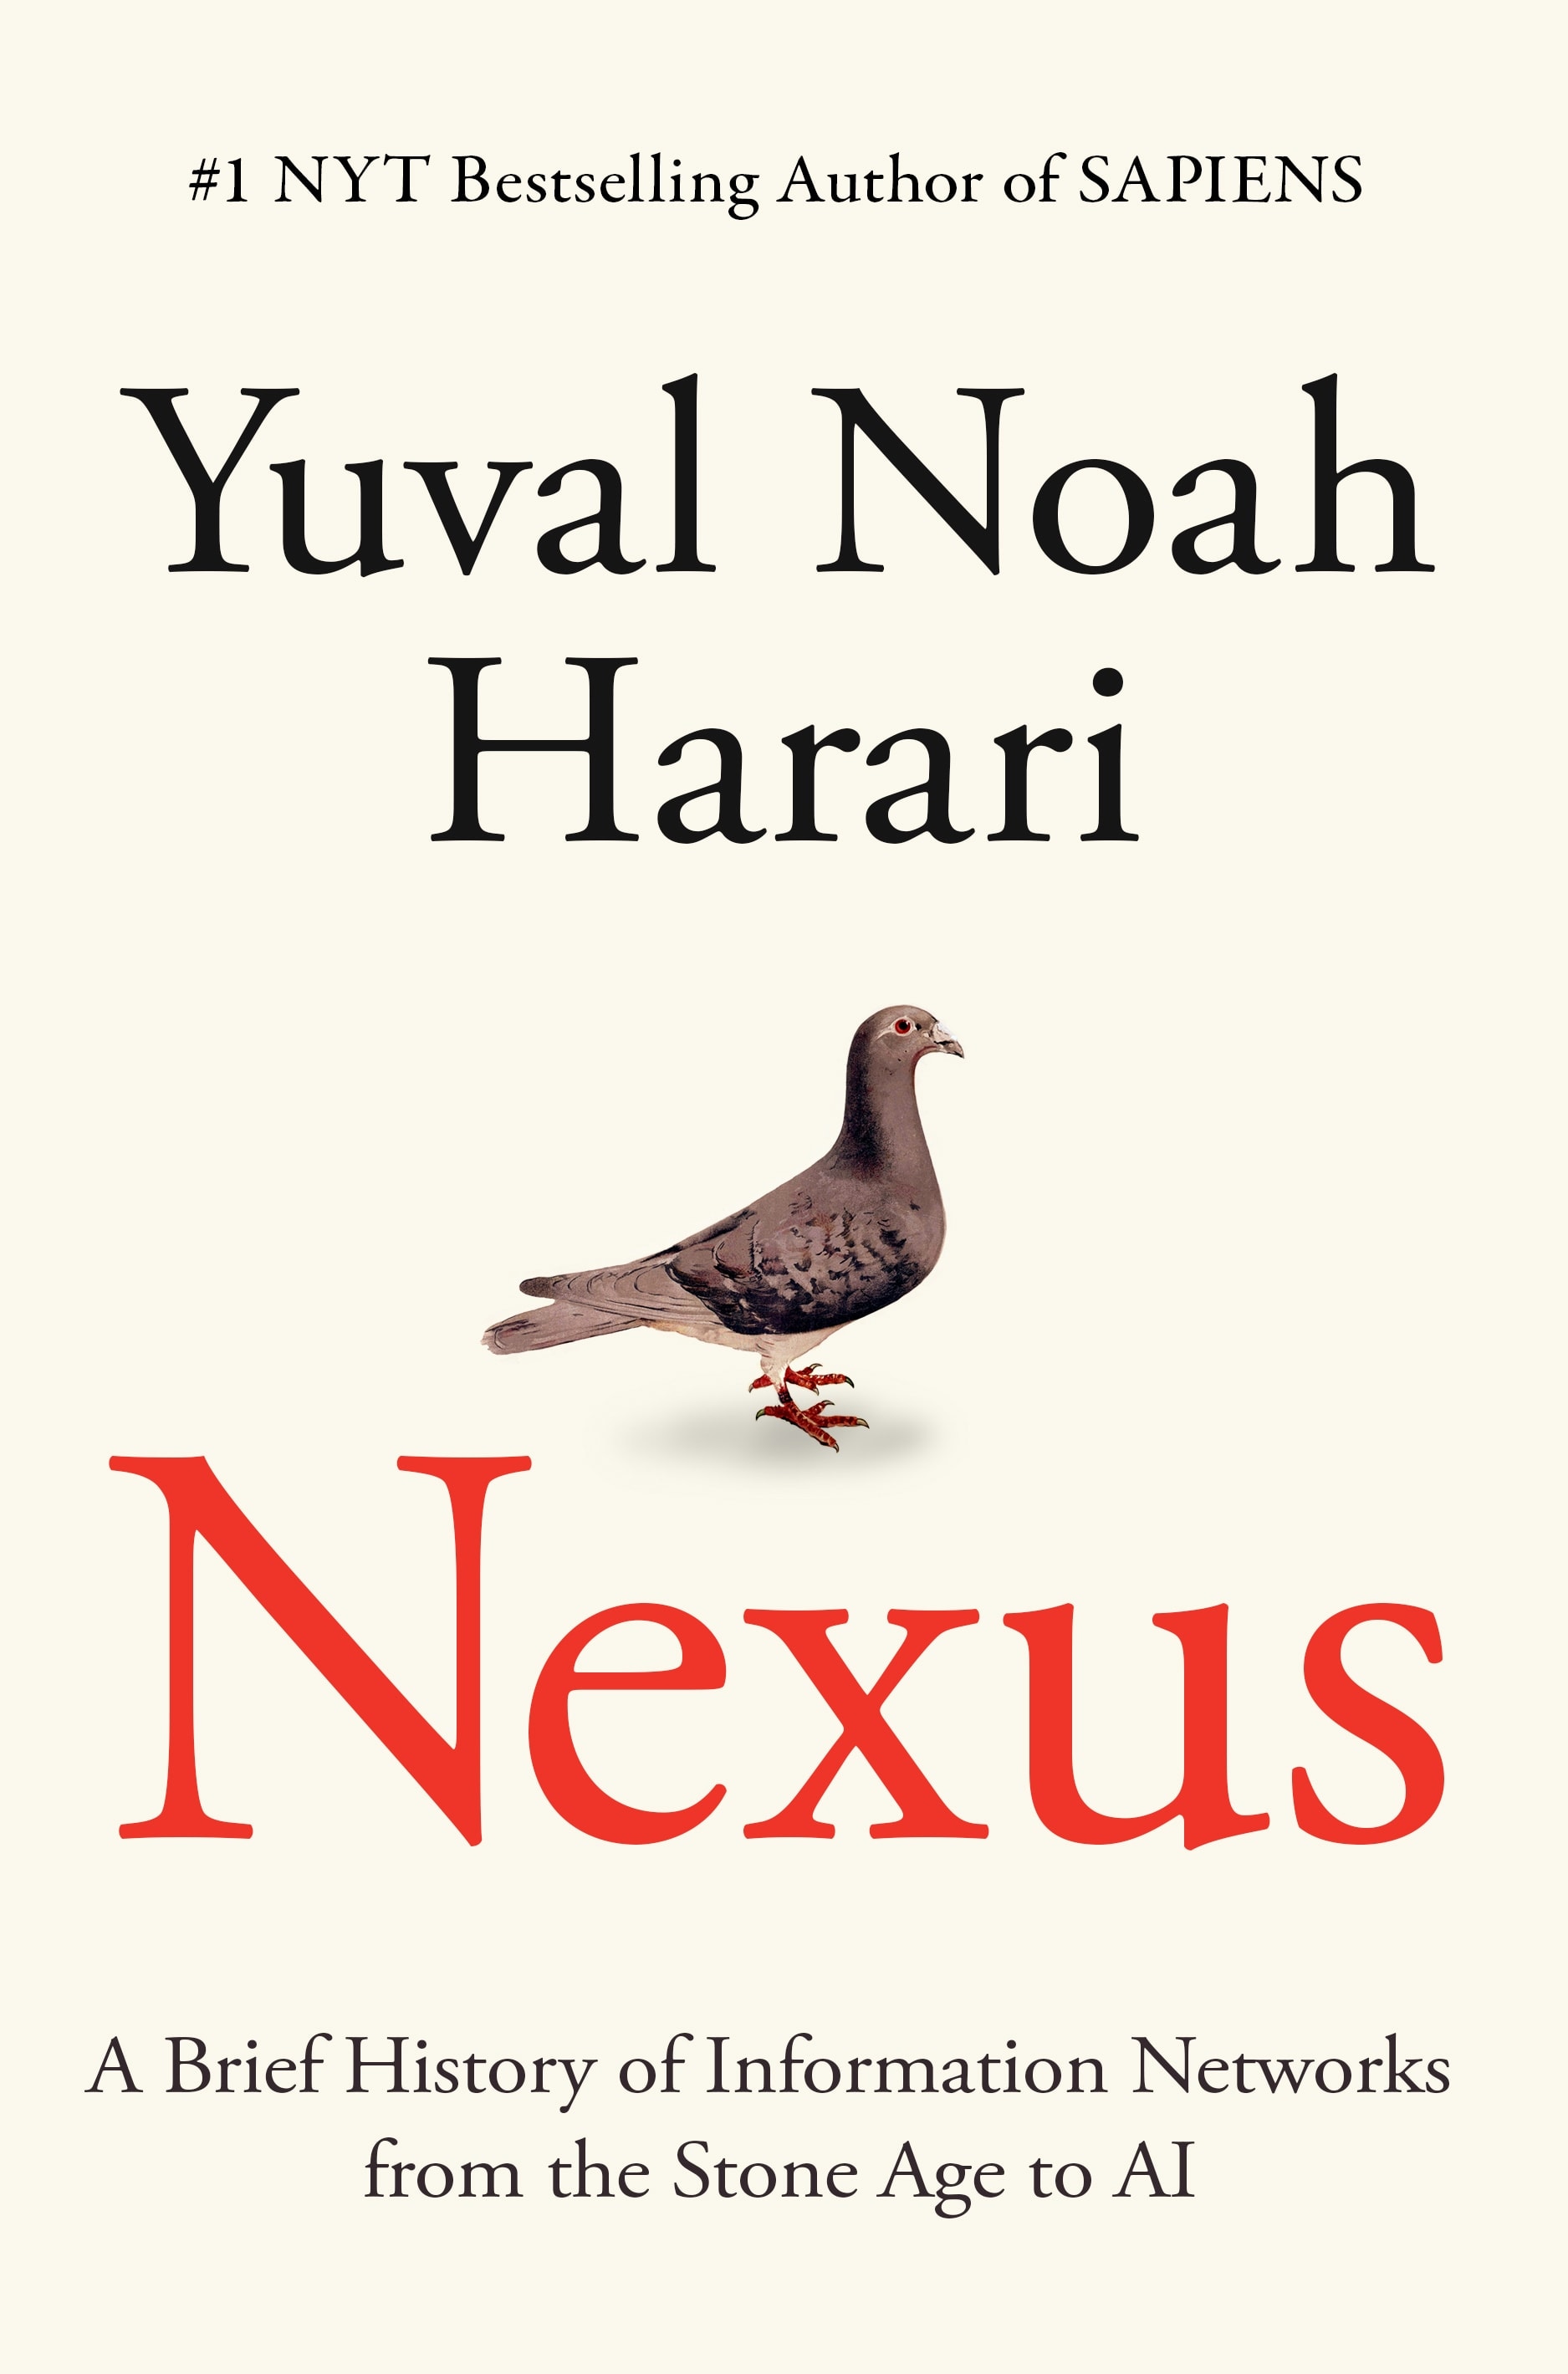 Book “Nexus” by Юваль Ной Харари